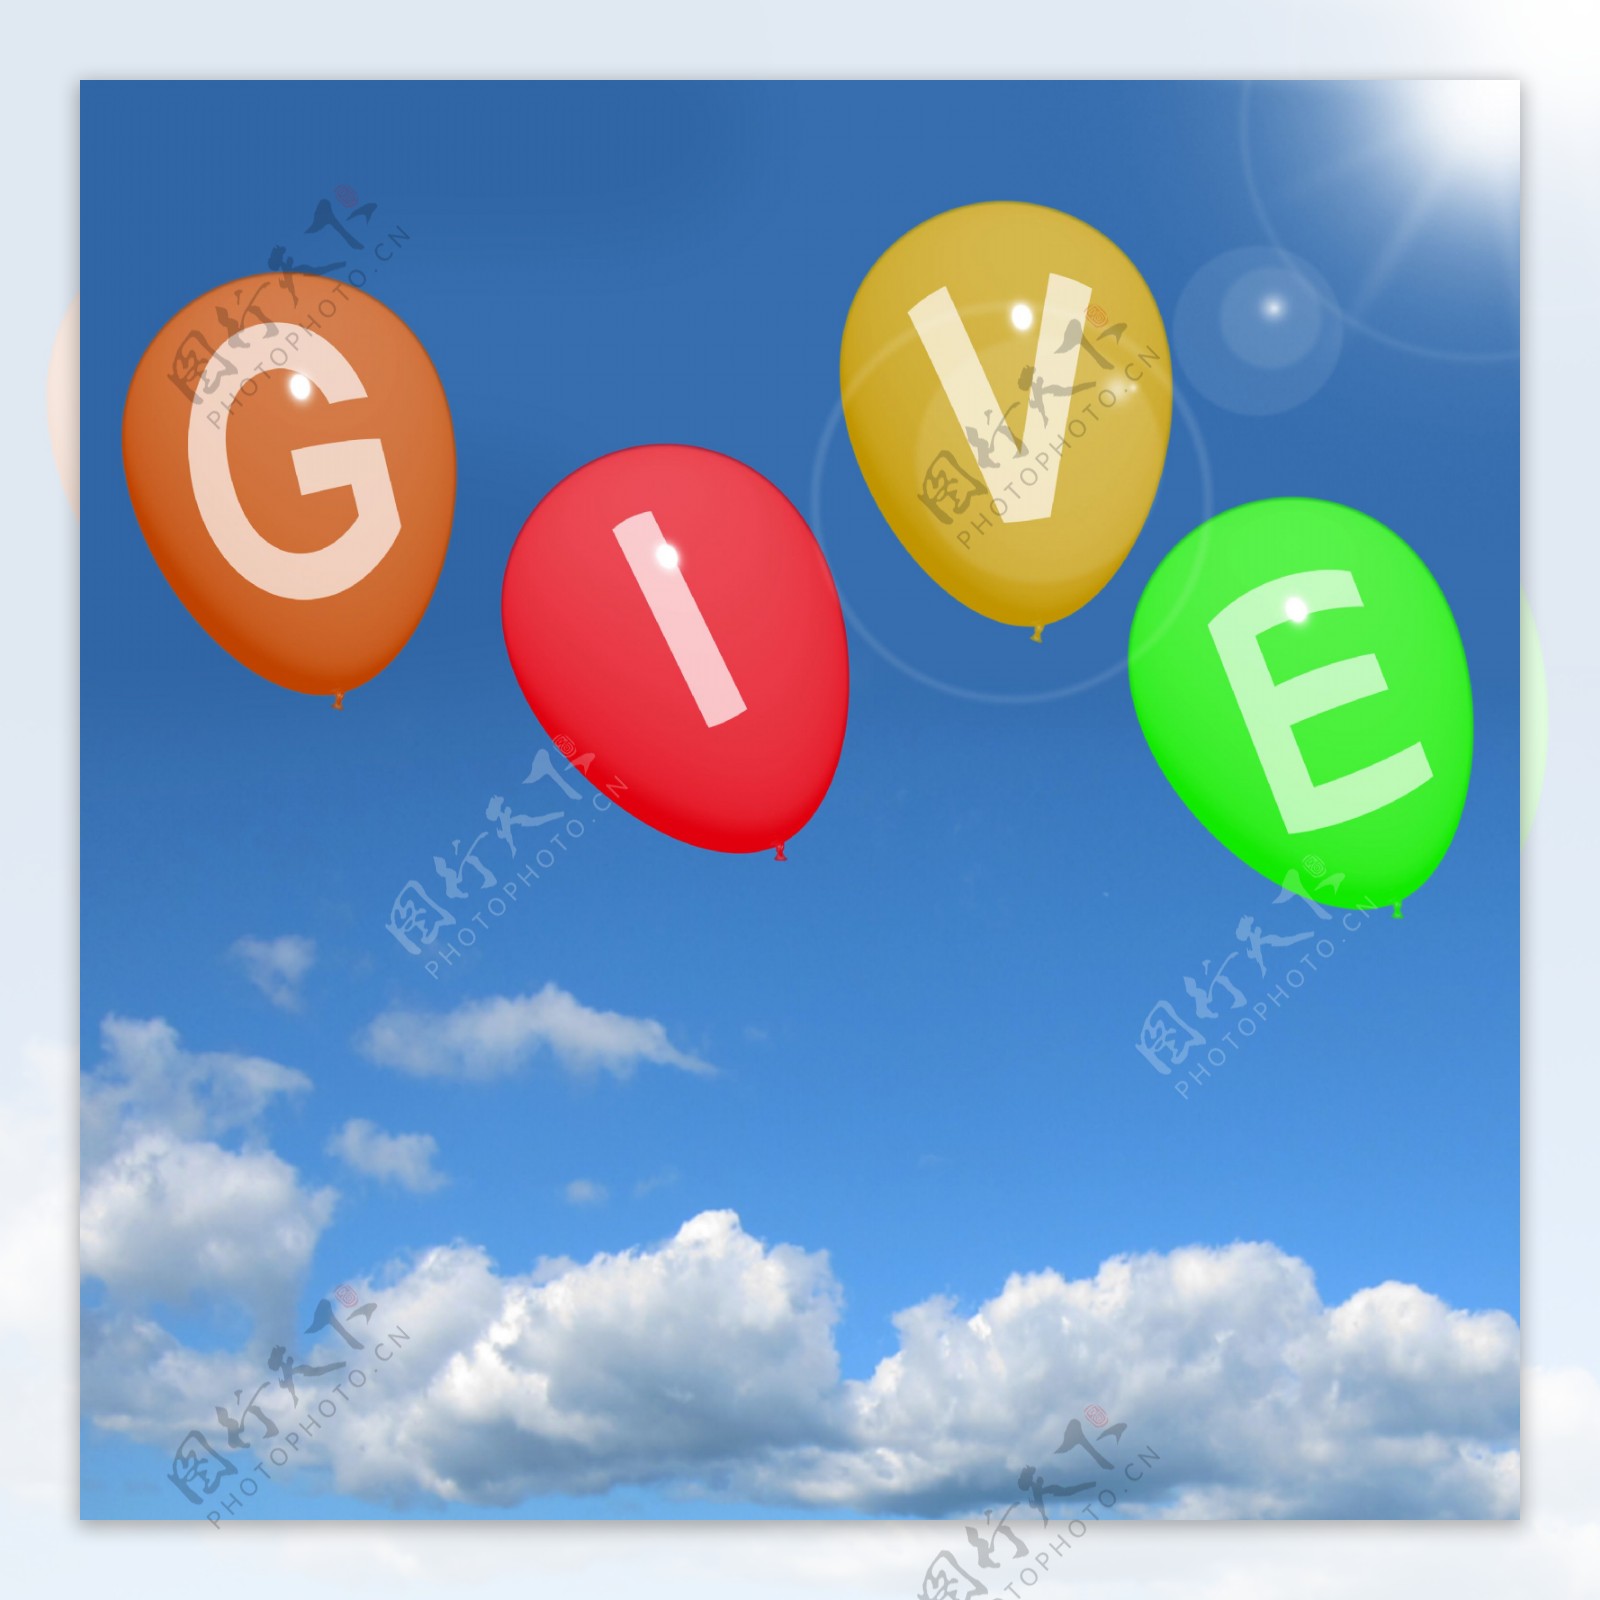 给气球显示慈善捐赠和慷慨的帮助的话